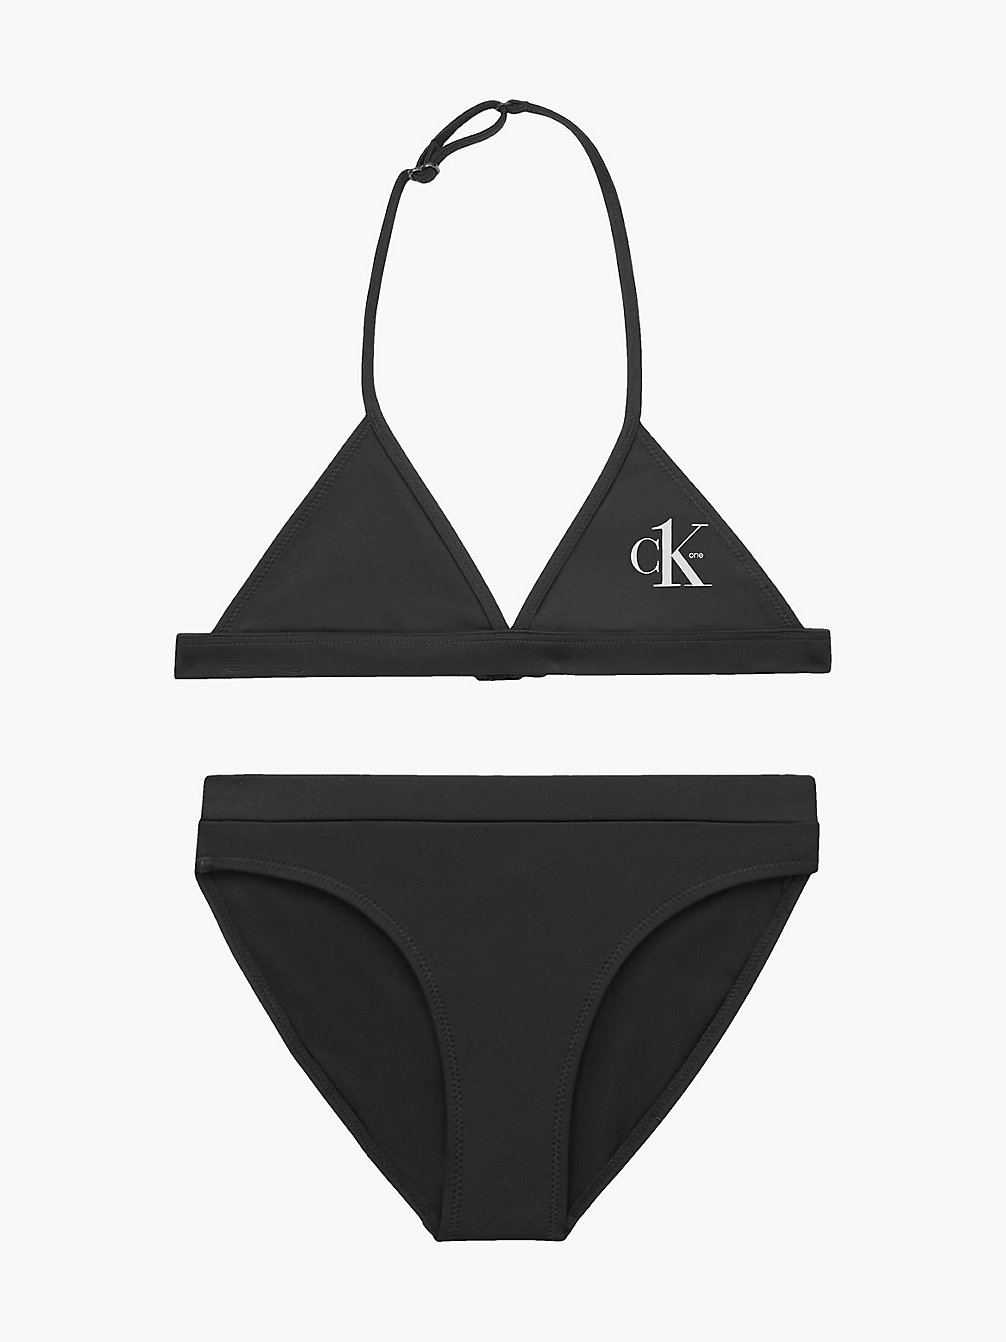 PVH BLACK Bikini-Set Mit Triangel-Top Für Mädchen - CK One undefined Maedchen Calvin Klein